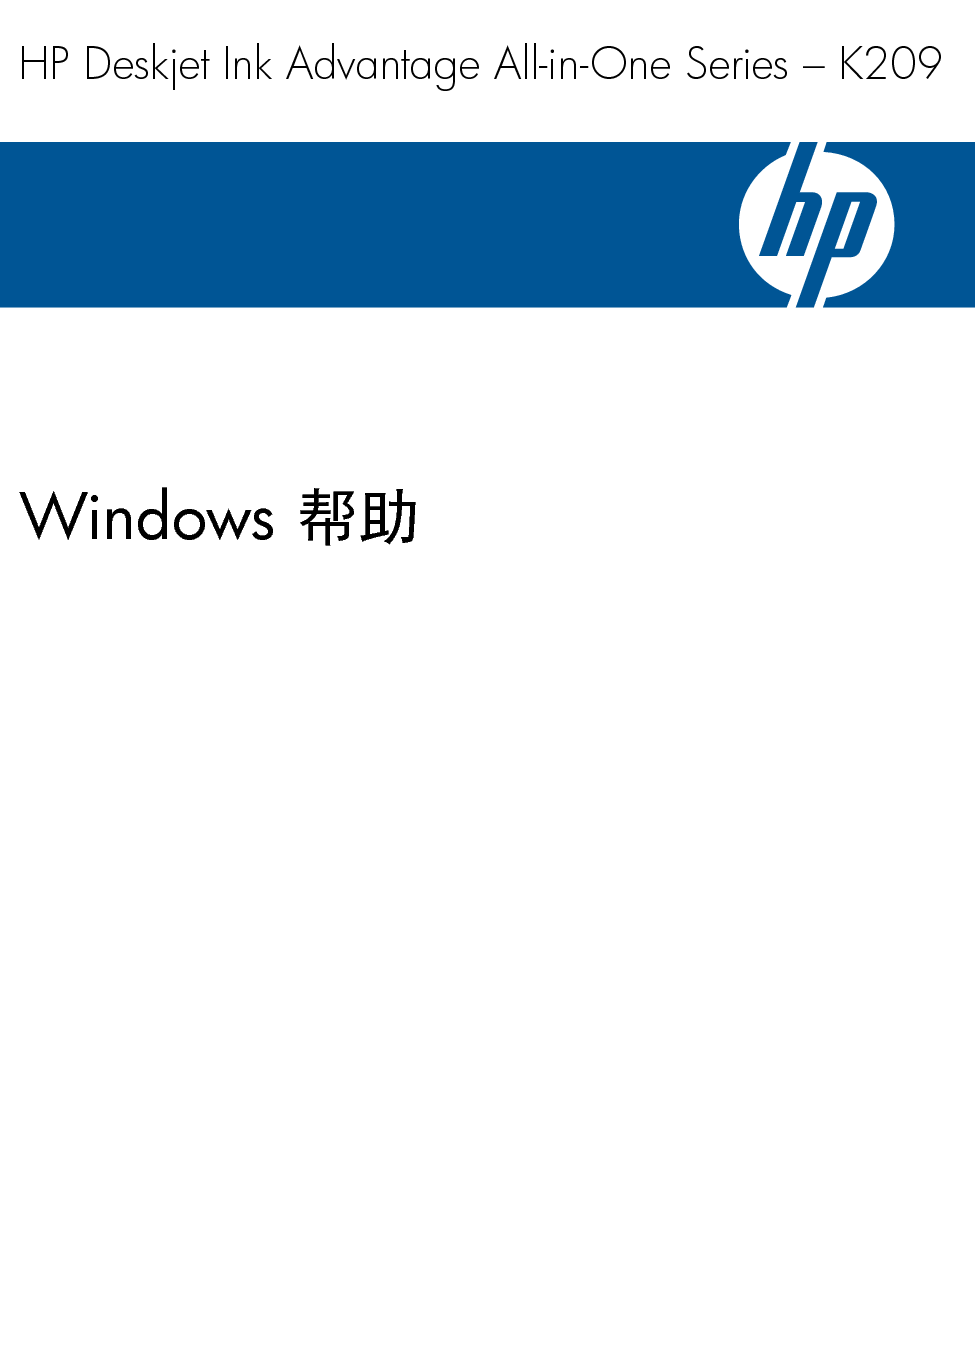 惠普 HP DeskJet Ink Advantage K209 Windows 用户指南 封面